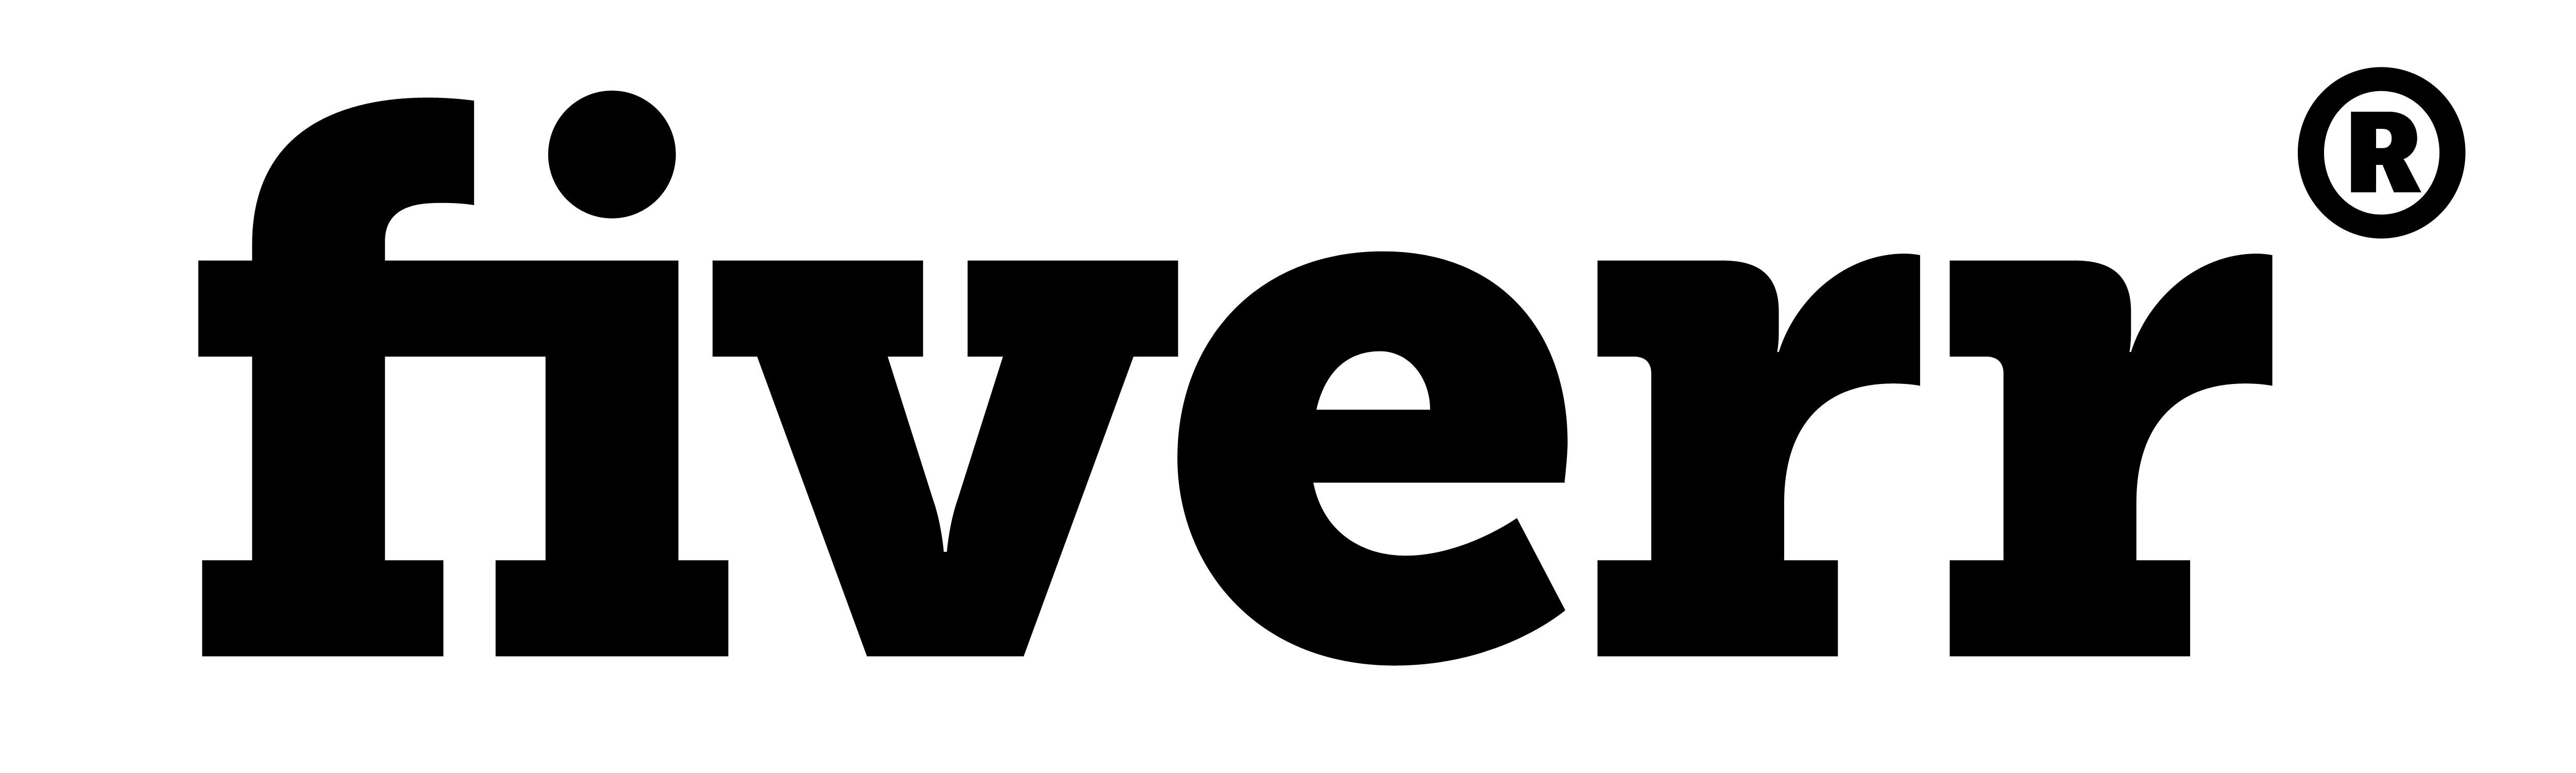 Fiverr Logo - Fiverr-Logo | EntreholicArchives